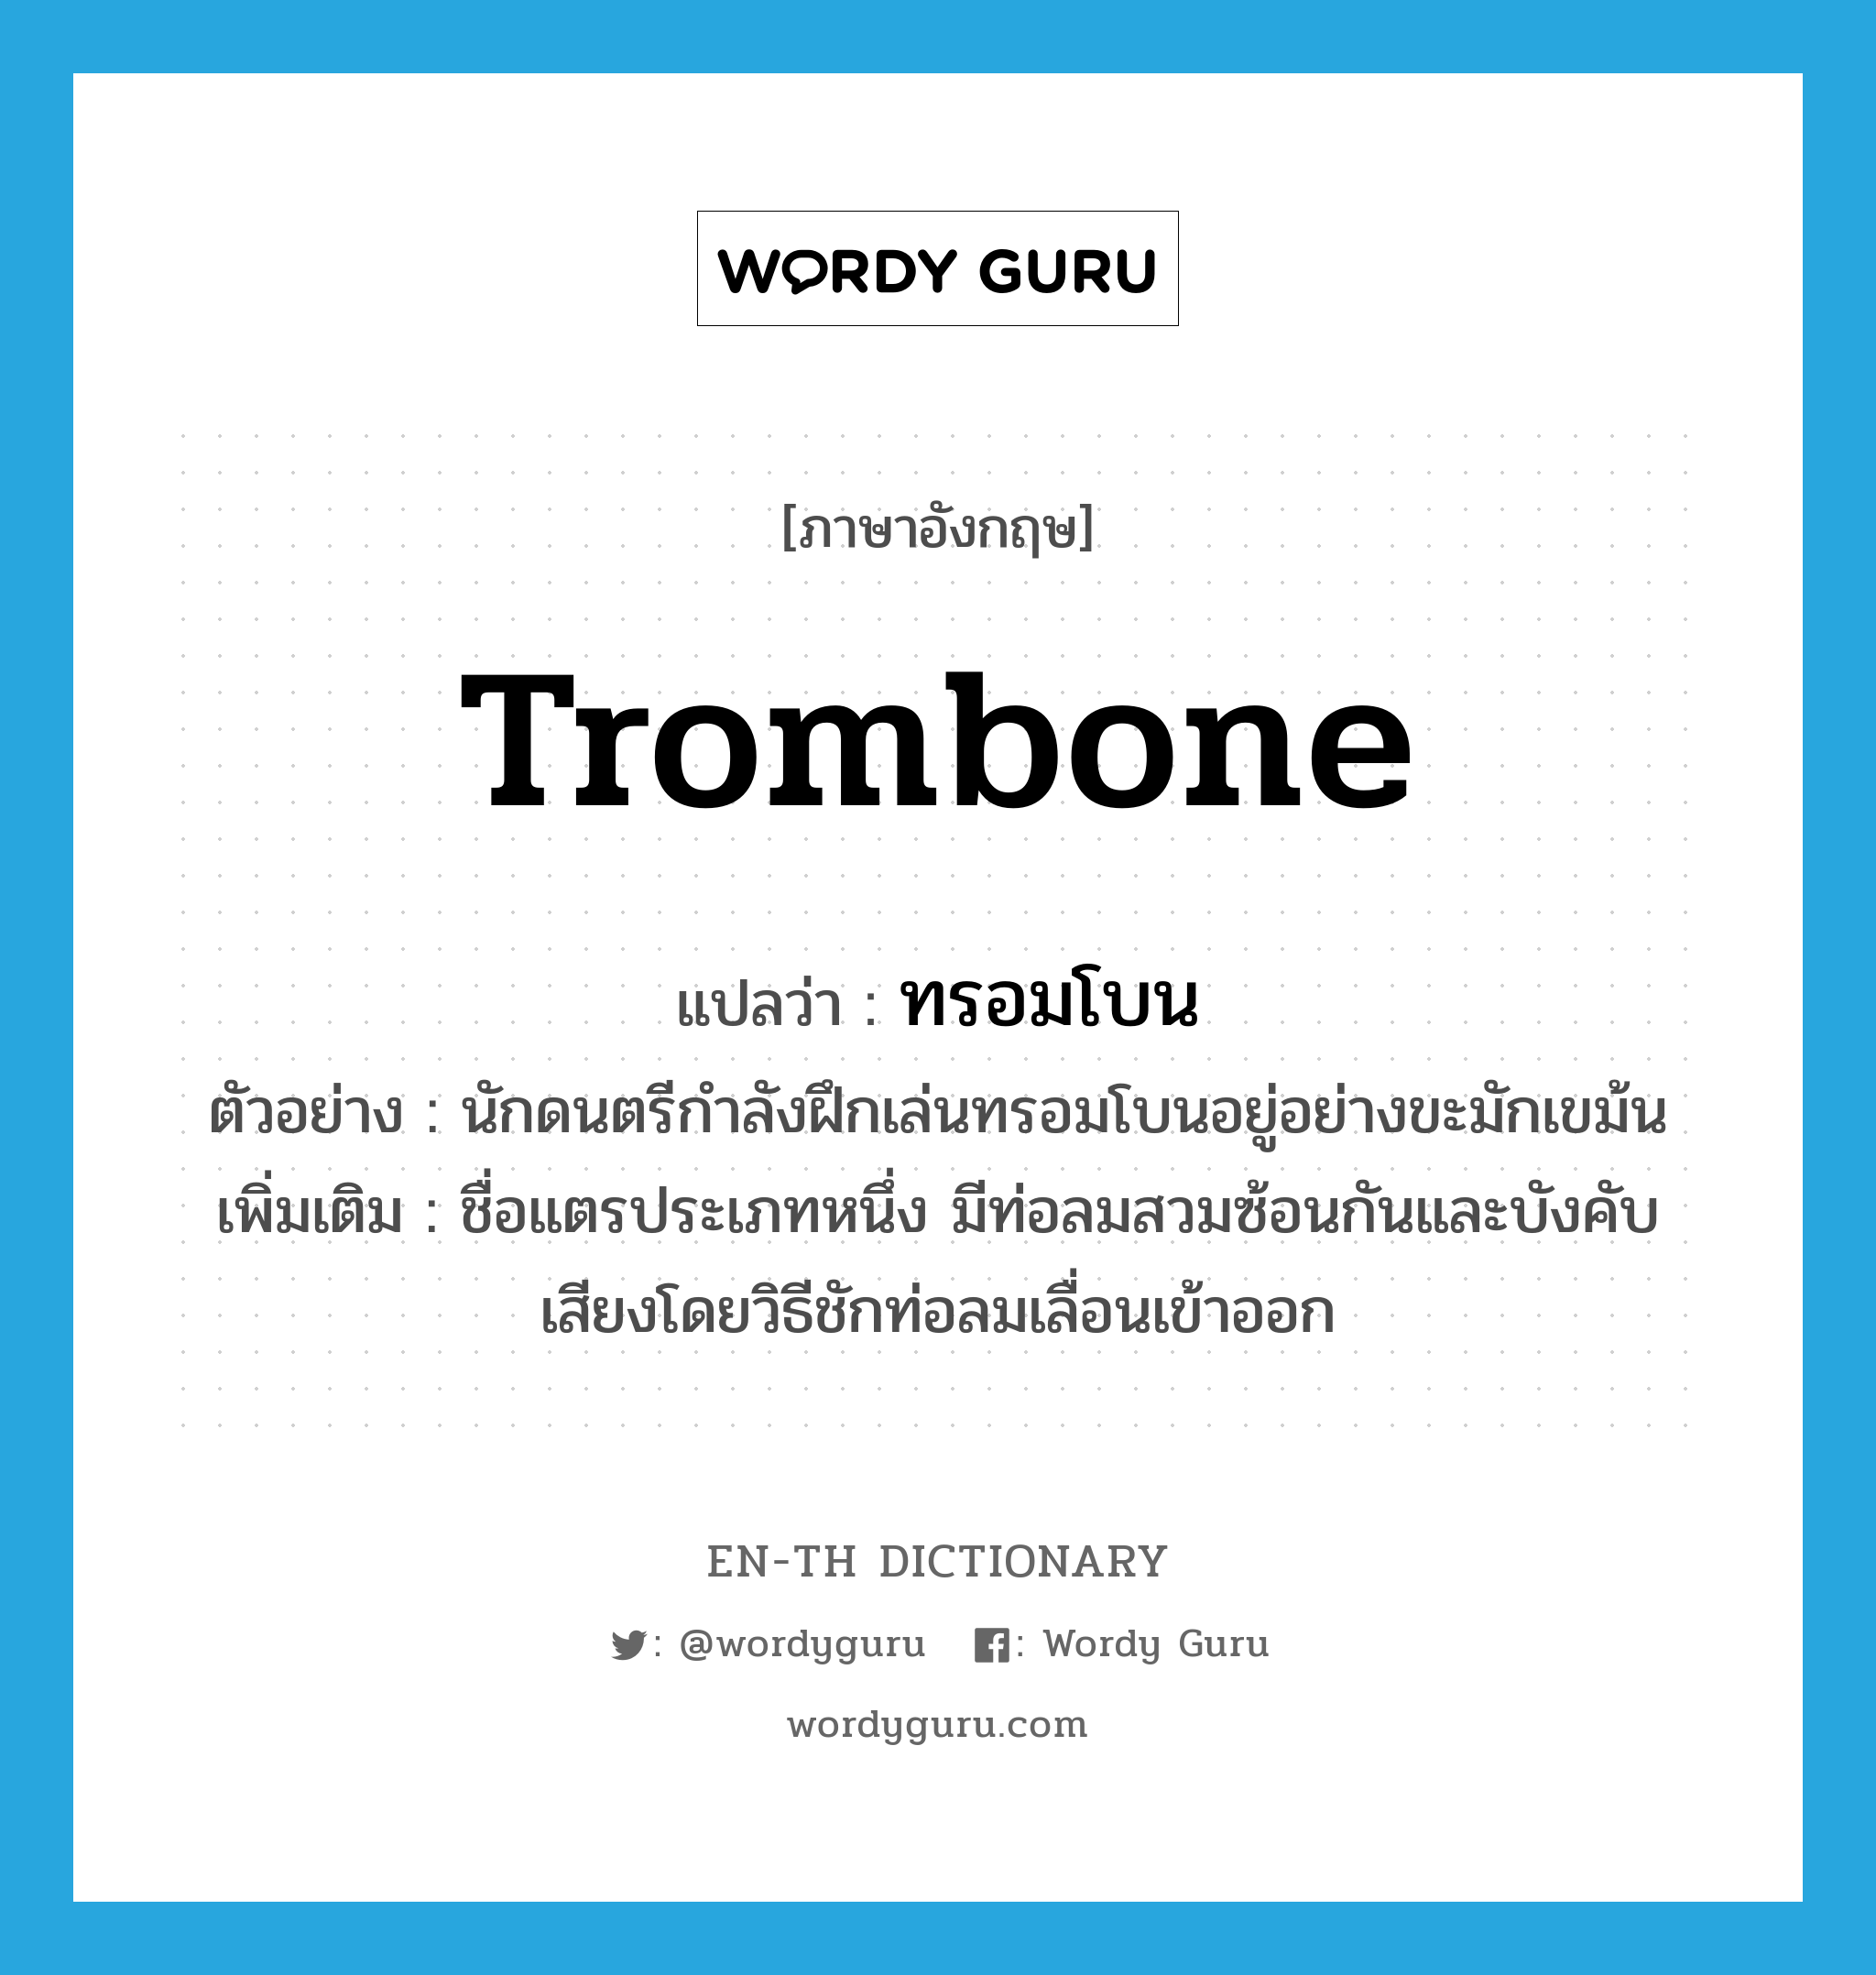 trombone แปลว่า?, คำศัพท์ภาษาอังกฤษ trombone แปลว่า ทรอมโบน ประเภท N ตัวอย่าง นักดนตรีกำลังฝึกเล่นทรอมโบนอยู่อย่างขะมักเขม้น เพิ่มเติม ชื่อแตรประเภทหนึ่ง มีท่อลมสวมซ้อนกันและบังคับเสียงโดยวิธีชักท่อลมเลื่อนเข้าออก หมวด N